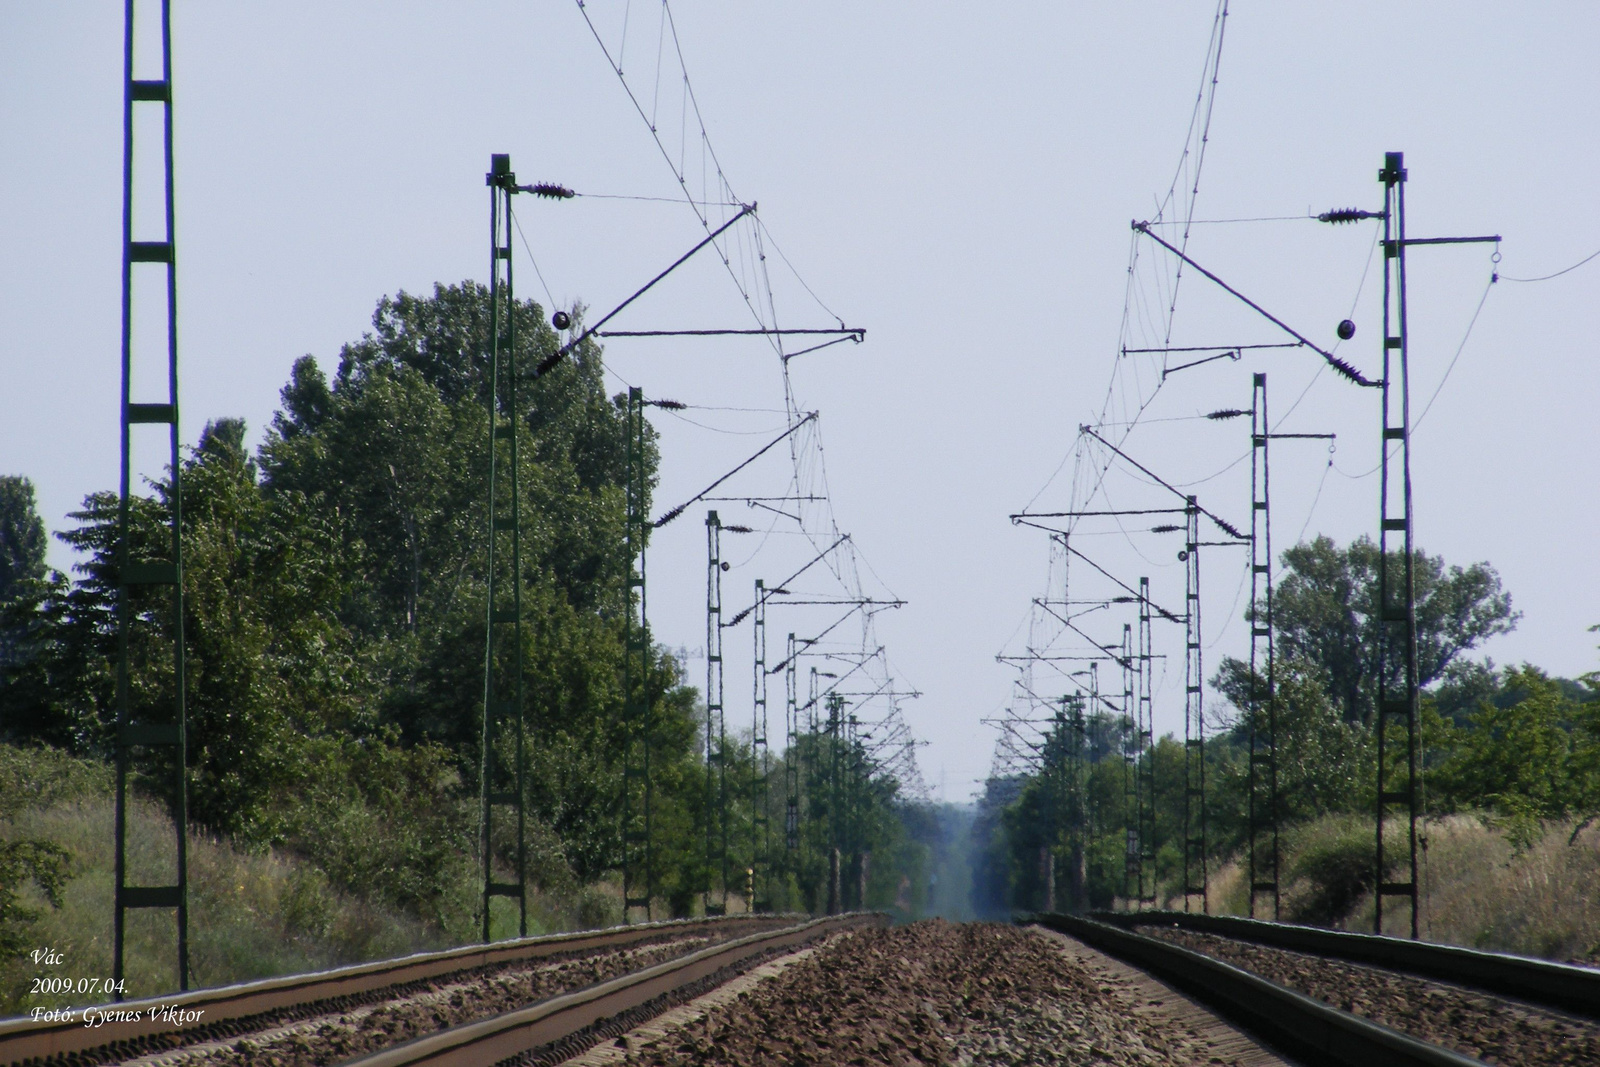 Vasúti pálya Vác - Sződliget között1